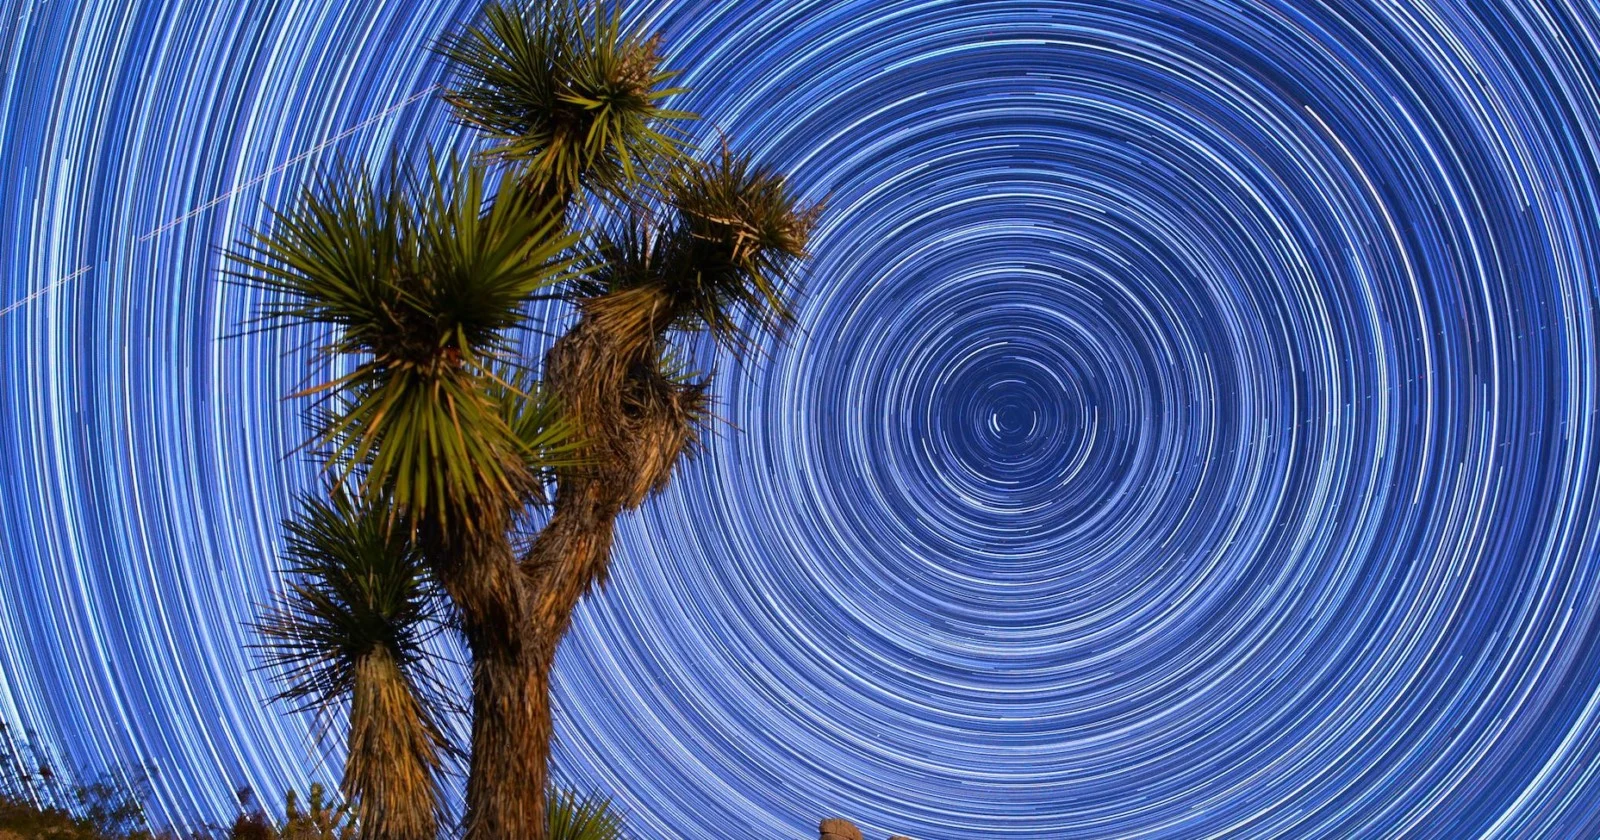 Mojave Çölü'nde yıldızlar ve dolunay eşliğinde muazzam bir timelapse! Ondan bundan